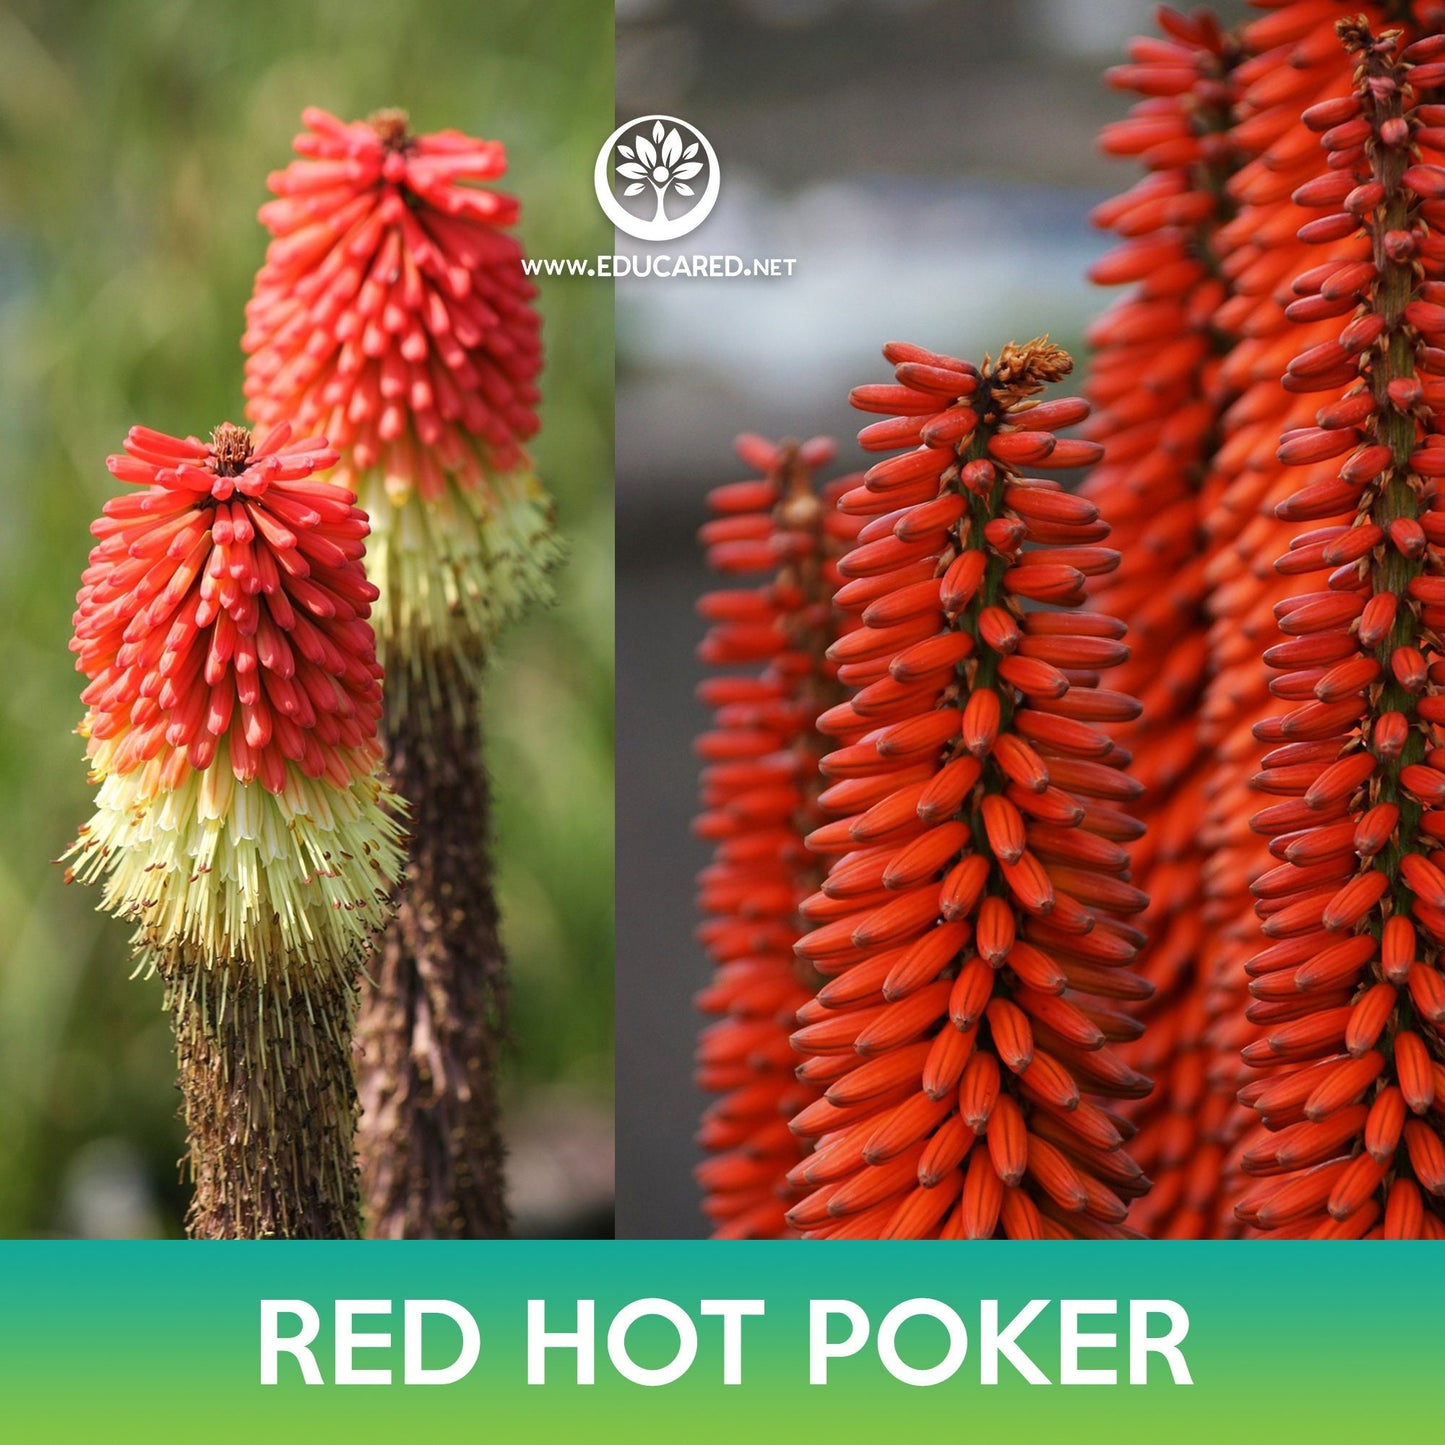 Red Hot Poker Seeds, Kniphofia Uvaria